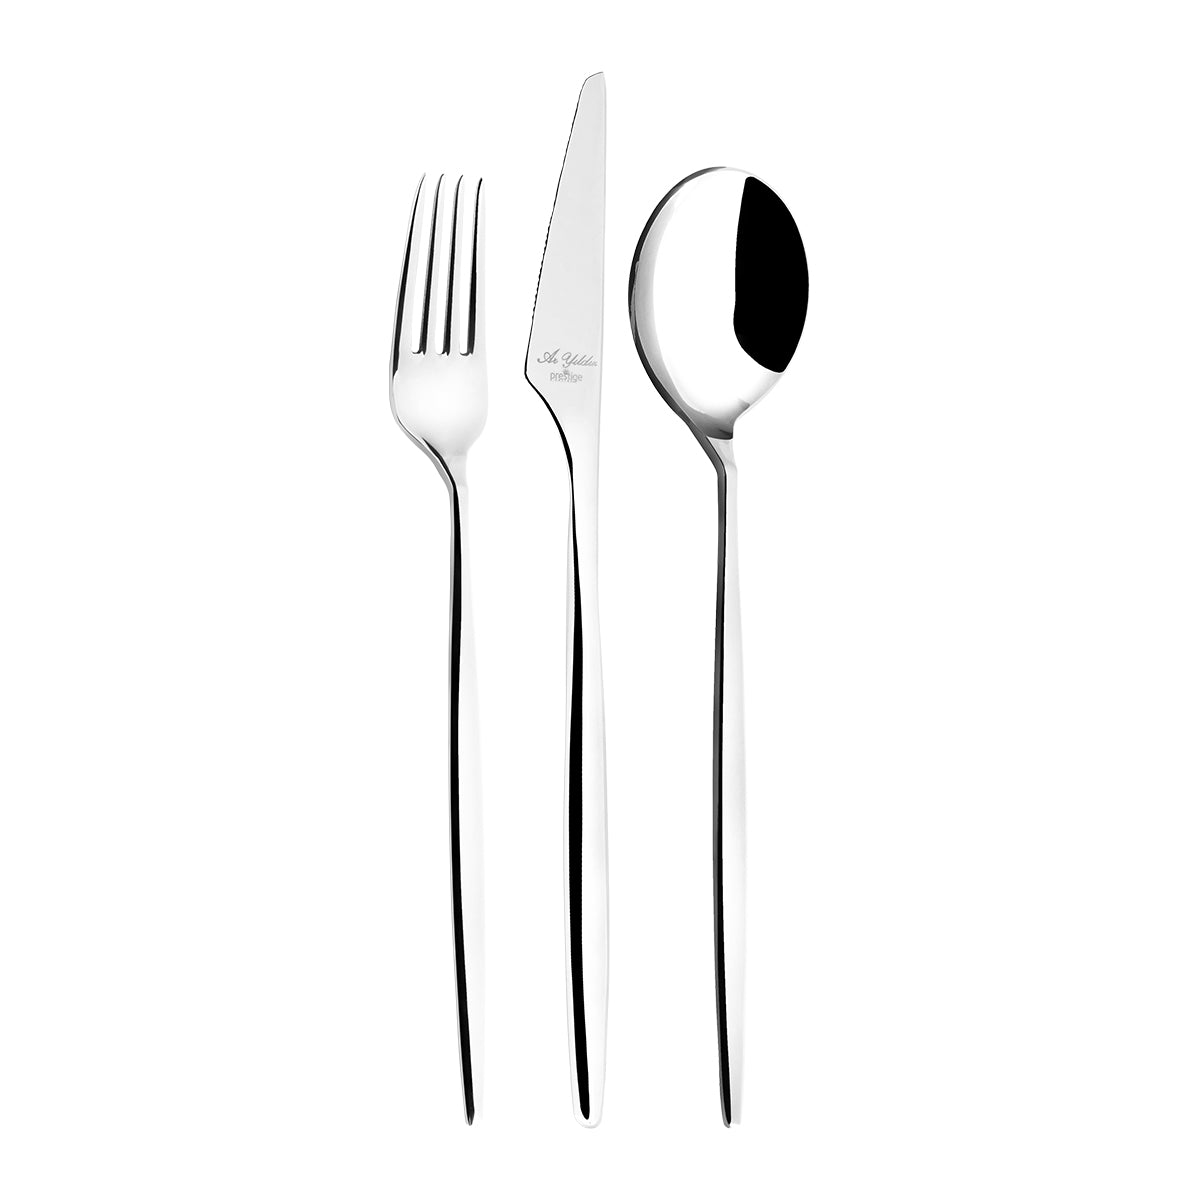 Aryıldız Studio Prestige 89 Piece Fork Spoon Knife Set with Storage